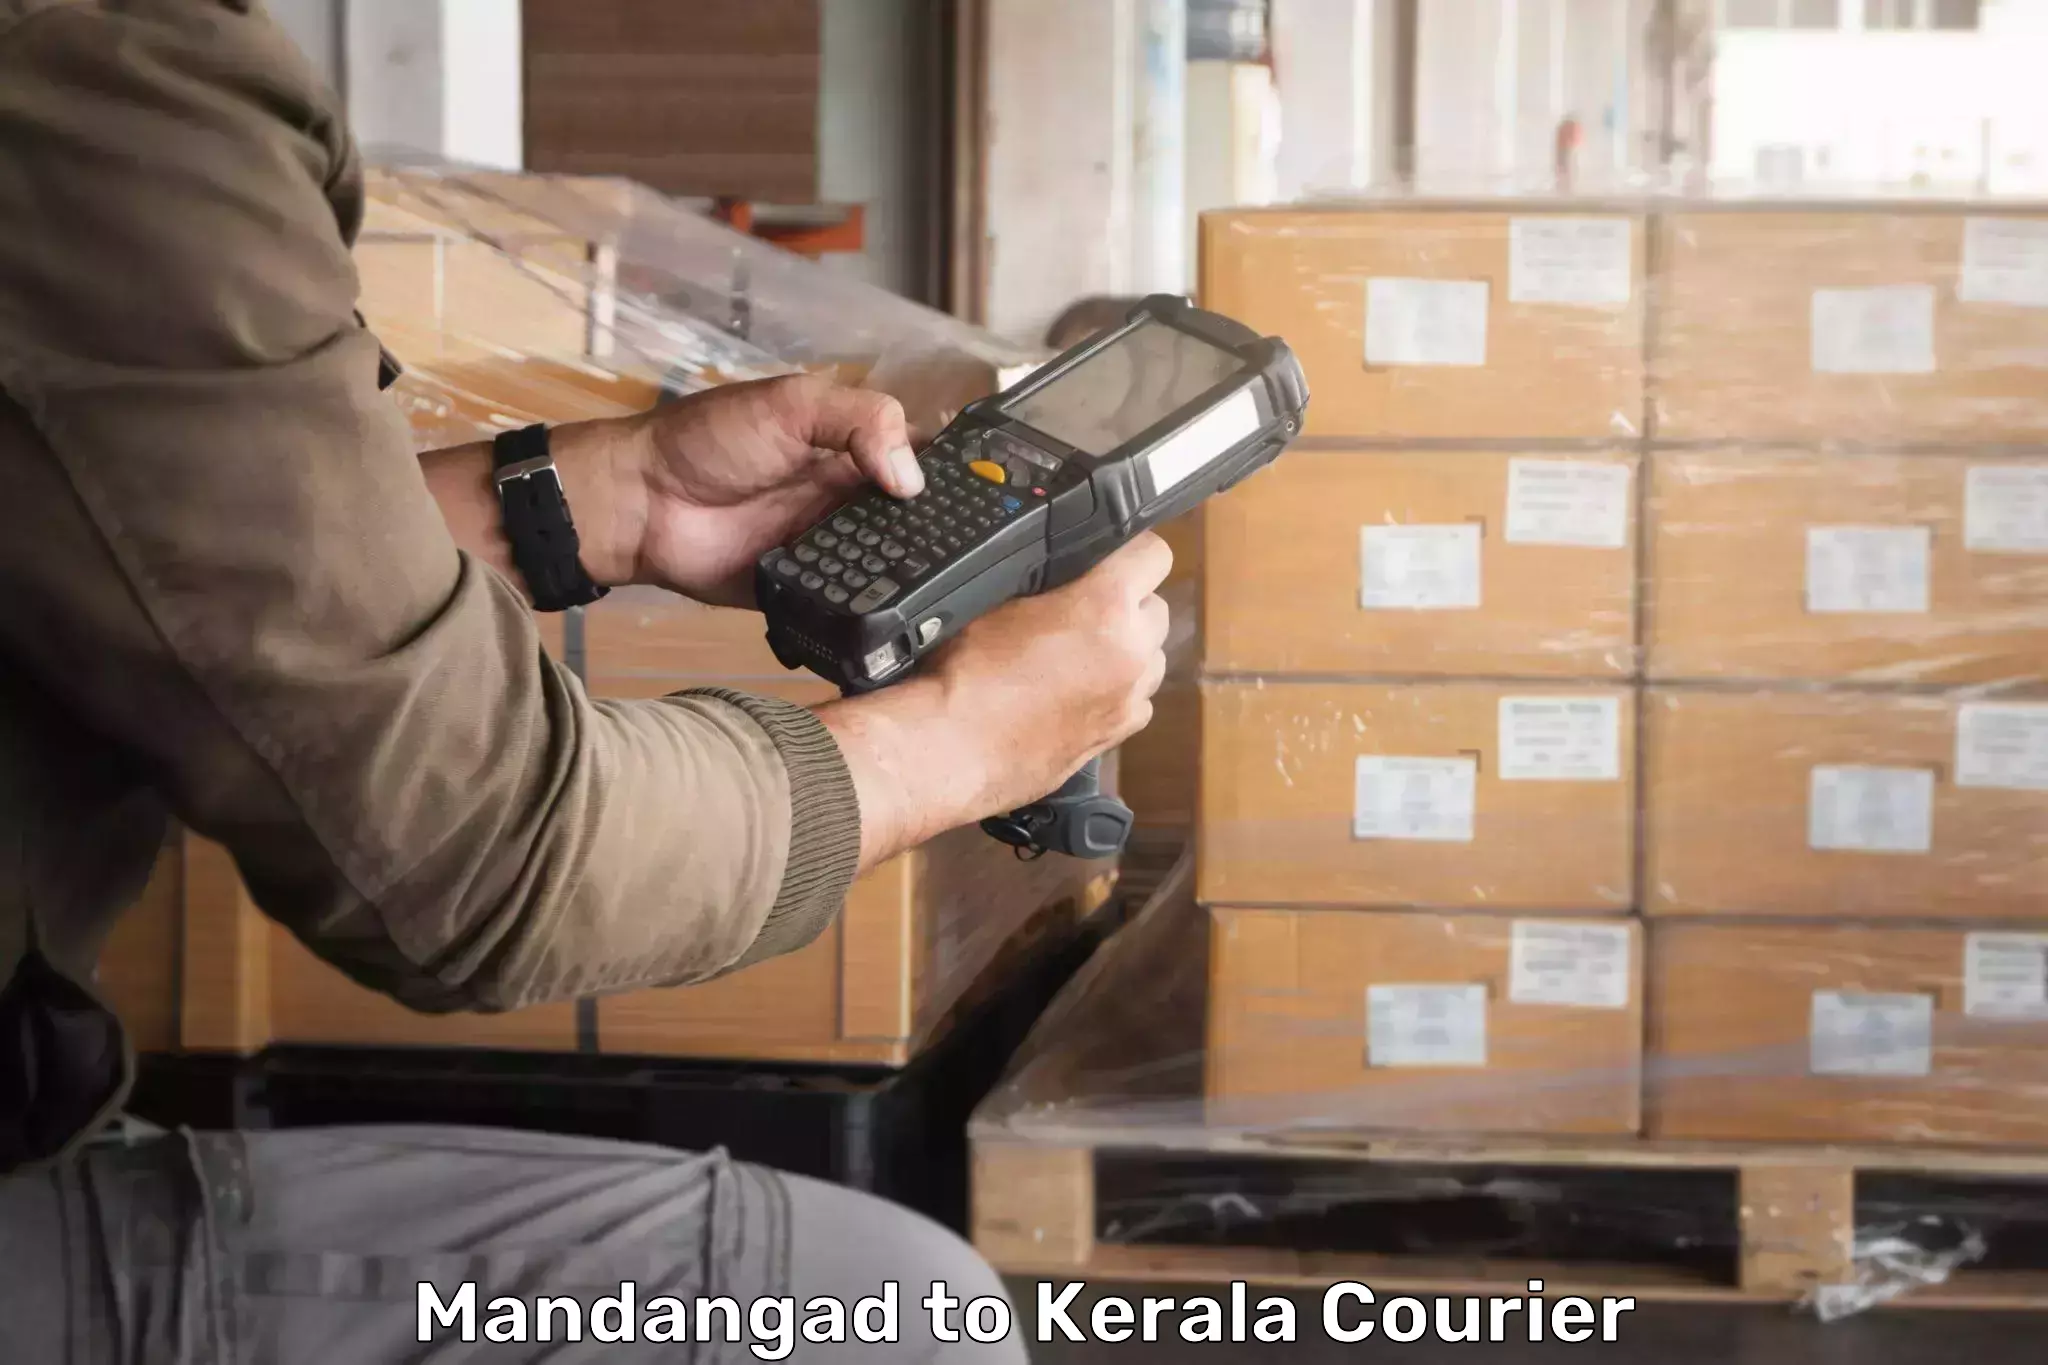 On-demand shipping options Mandangad to Kerala